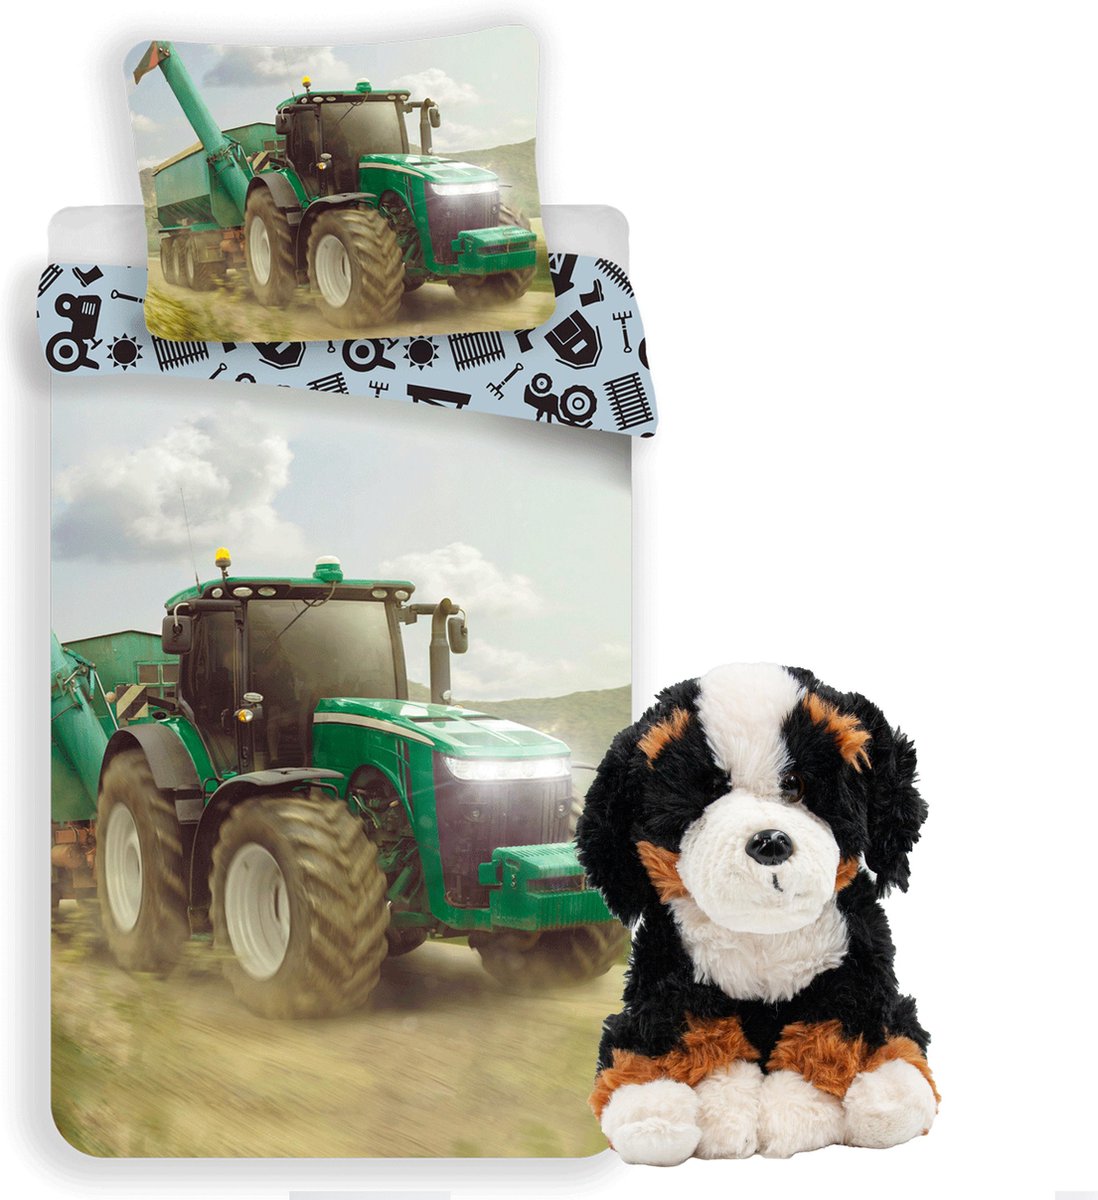 Tractor dekbedovertrek set 140 x 200 cm, incl. Berner sennenhond 24 cm, jongens stoere boerderij kinderen slaapkamer eenpersoons dekbedovertrek, honden